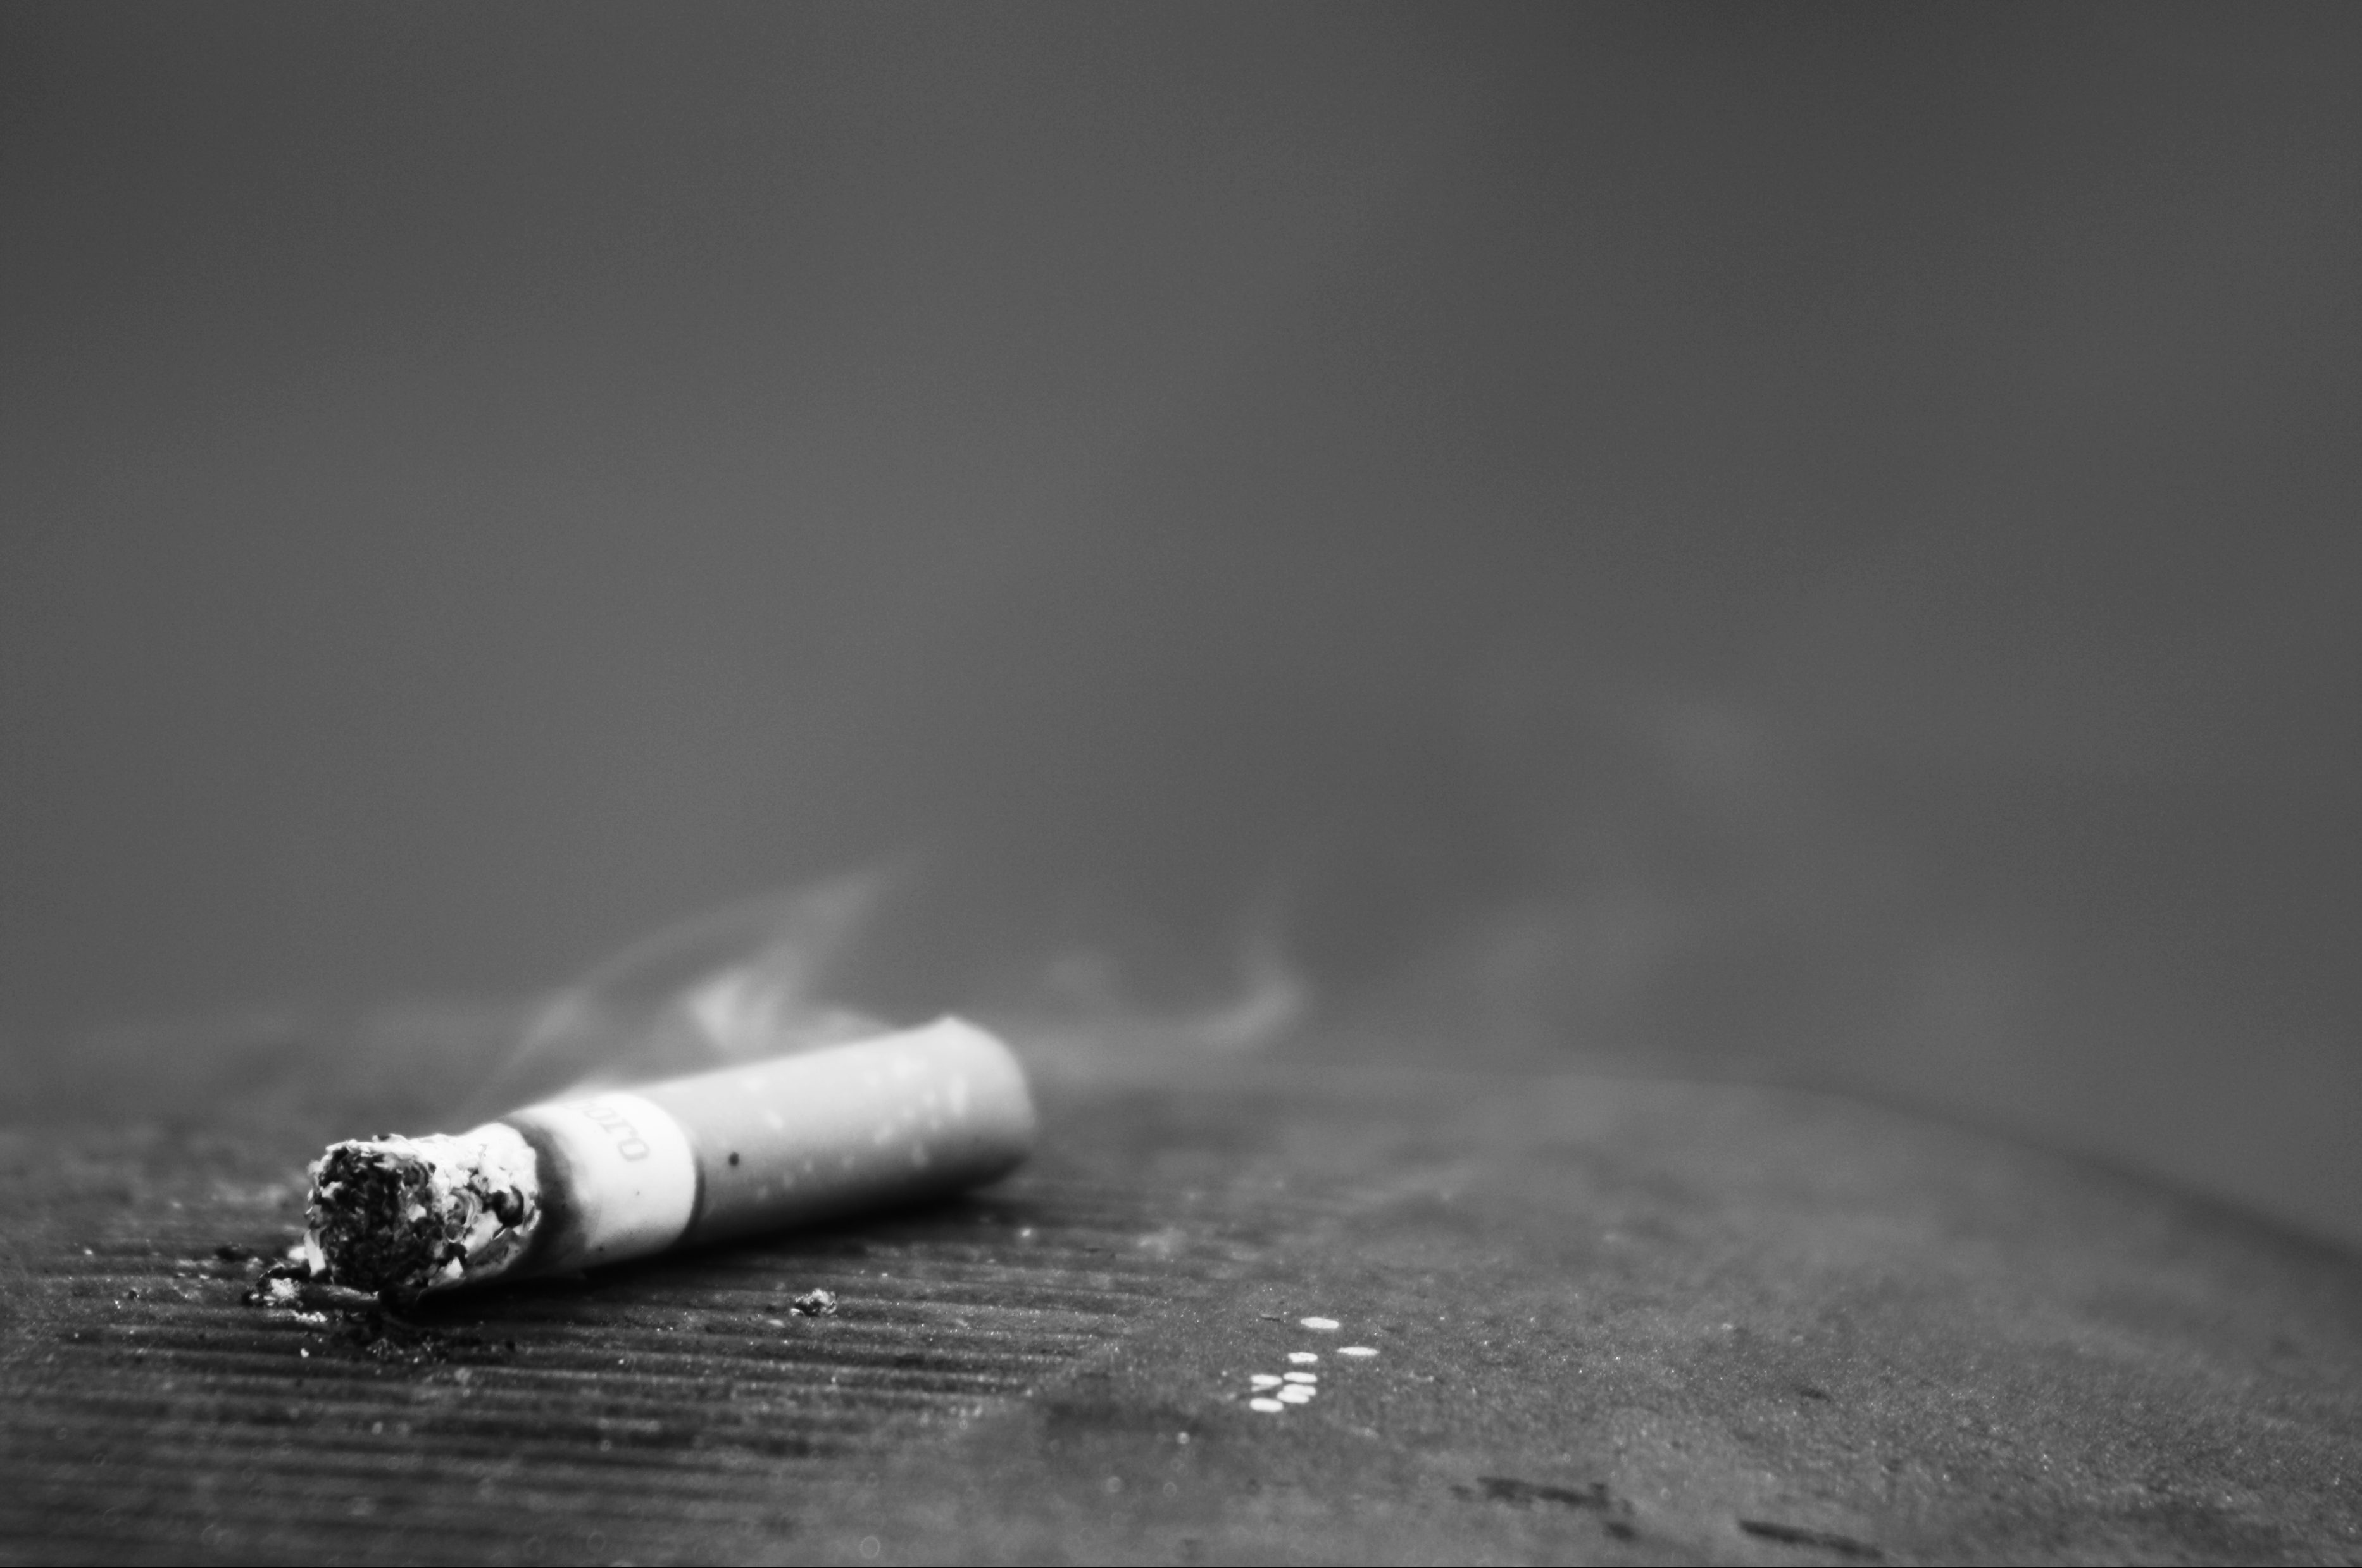 Plano general, blanco y negro. Cigarrillo abandonado sobre una papelera callejera consumiéndose con un hilo de humo.